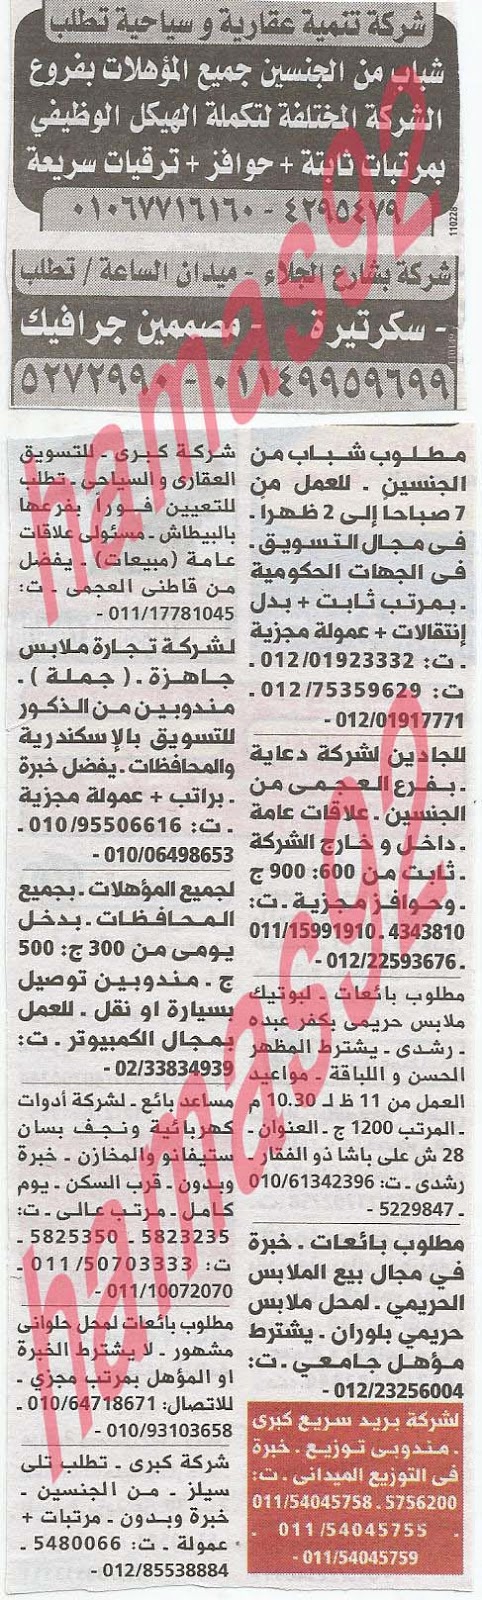 وظائف خالية من جريدة الوسيط الاسكندرية الثلاثاء 11-06-2013 %D9%88+%D8%B3+%D8%B3+6